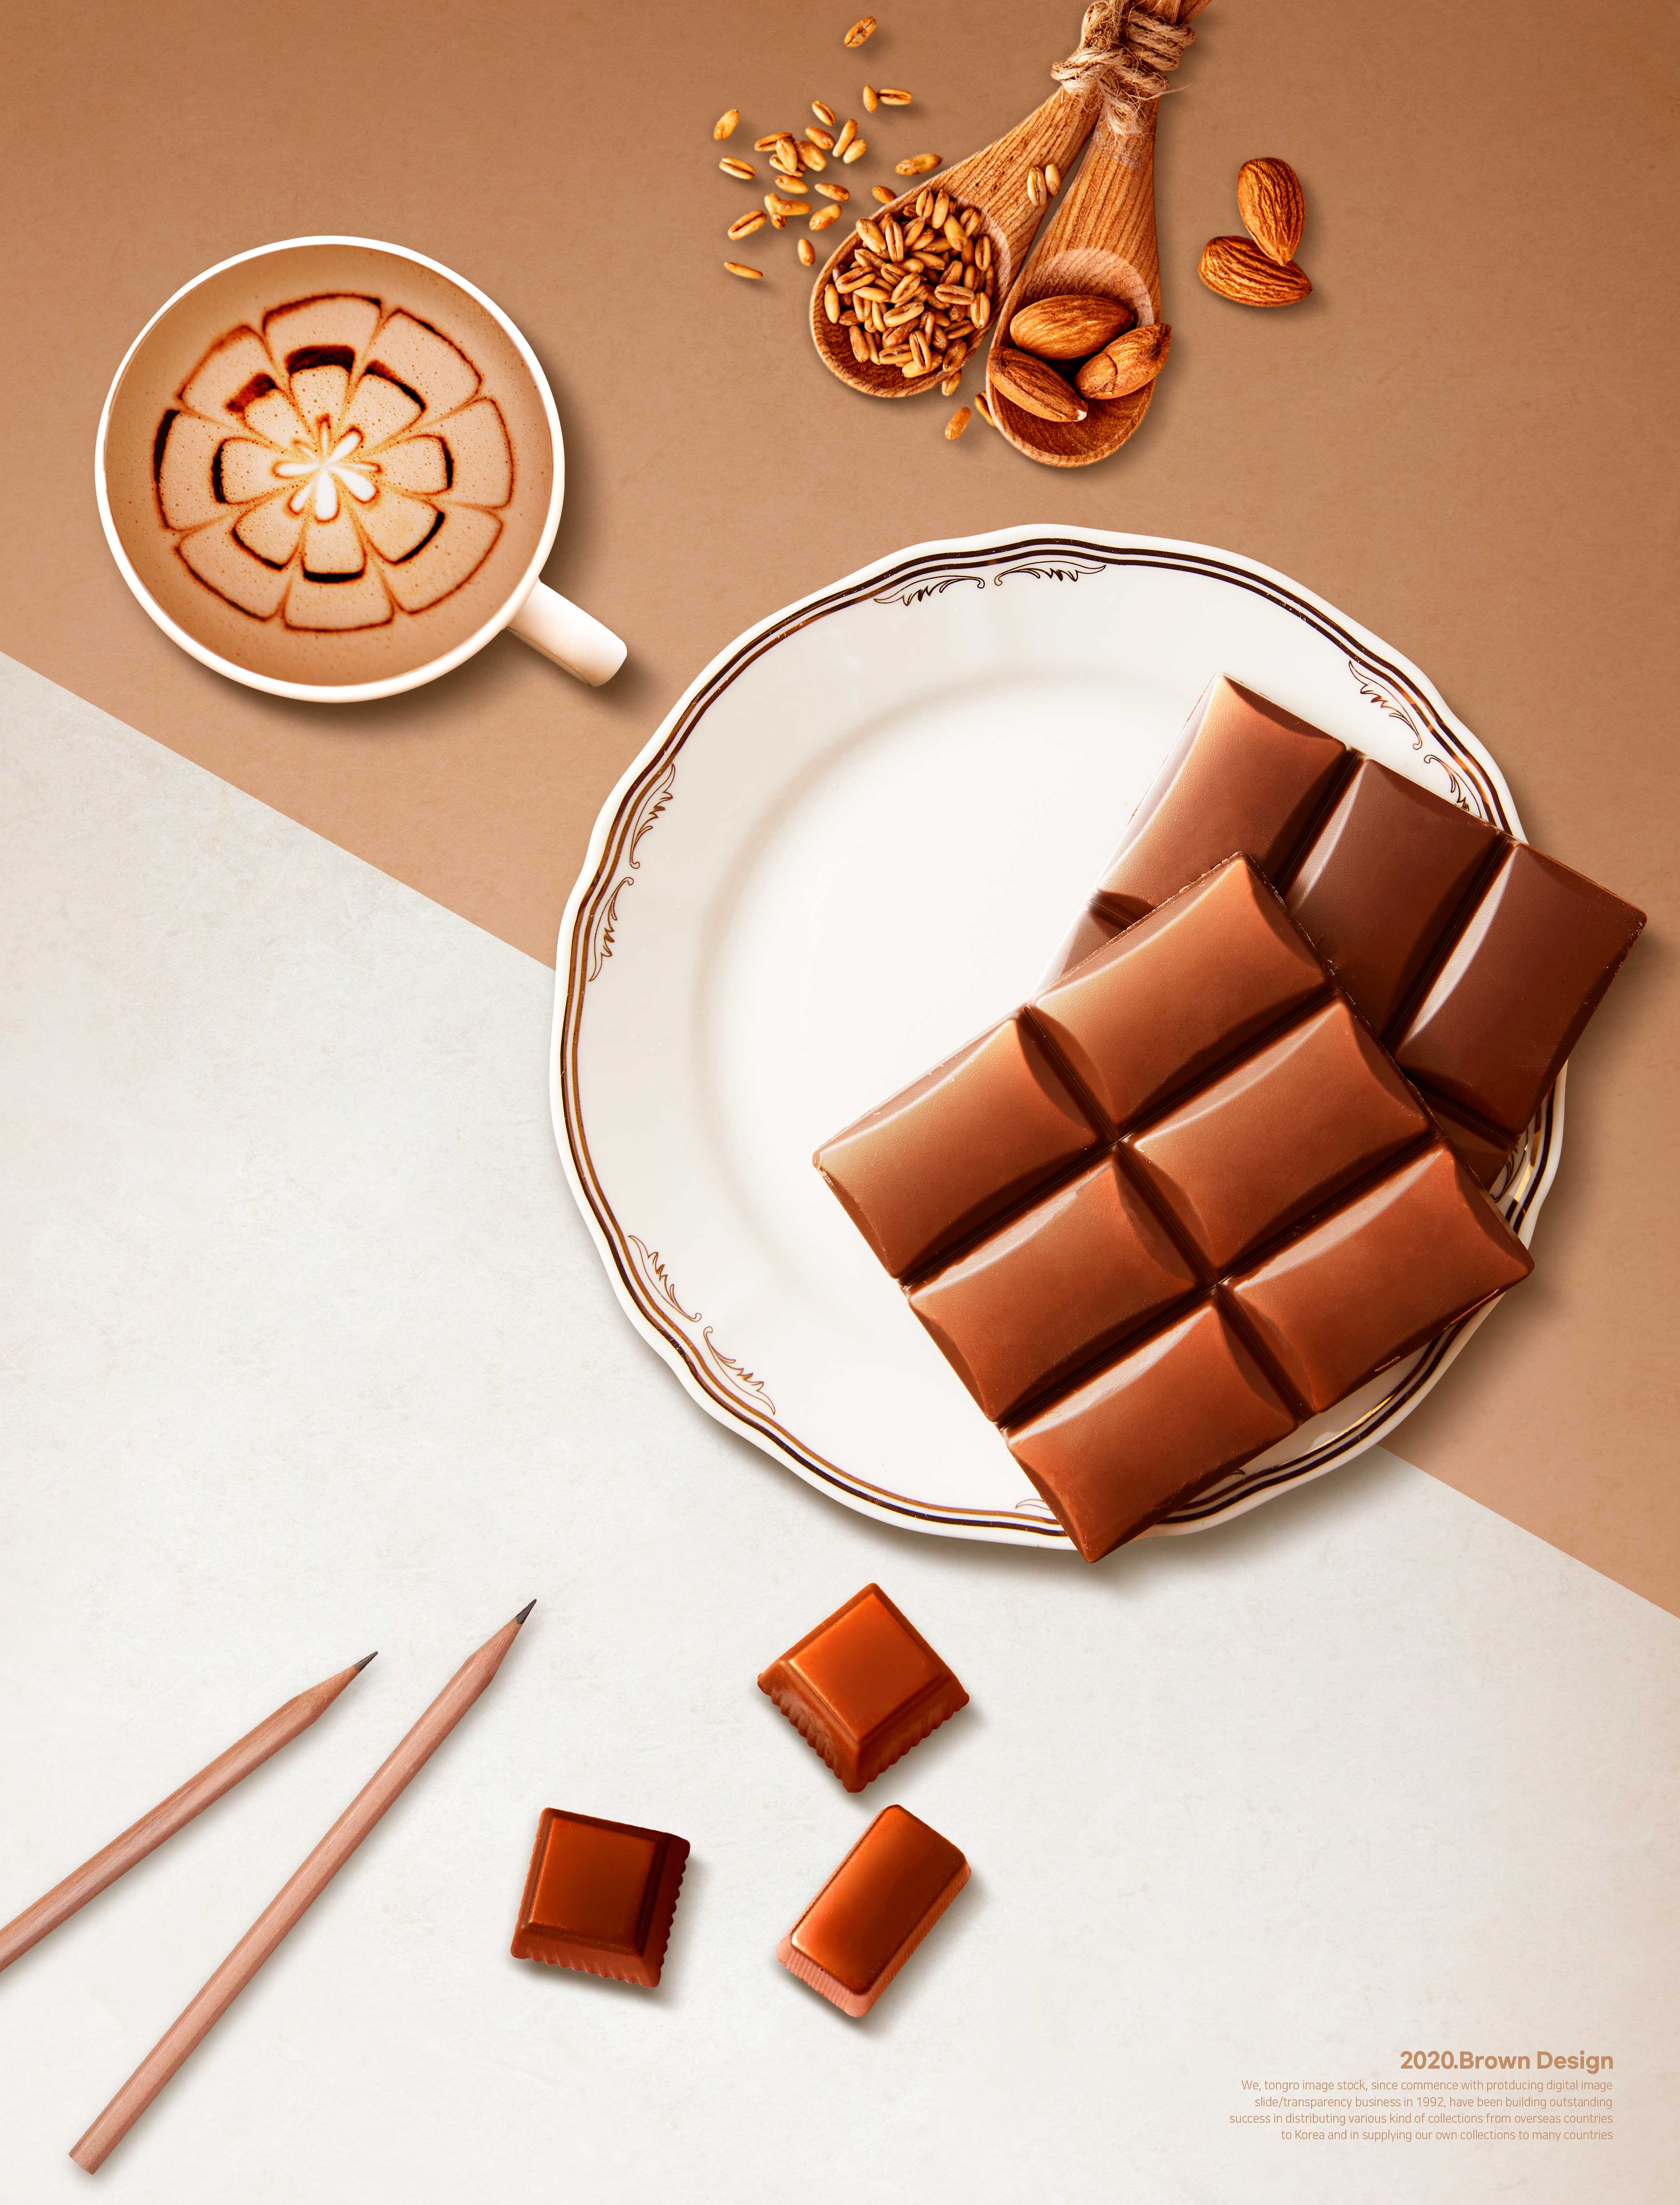 巧克力浪漫棕色零食产品推广海报设计韩国素材设计素材模板